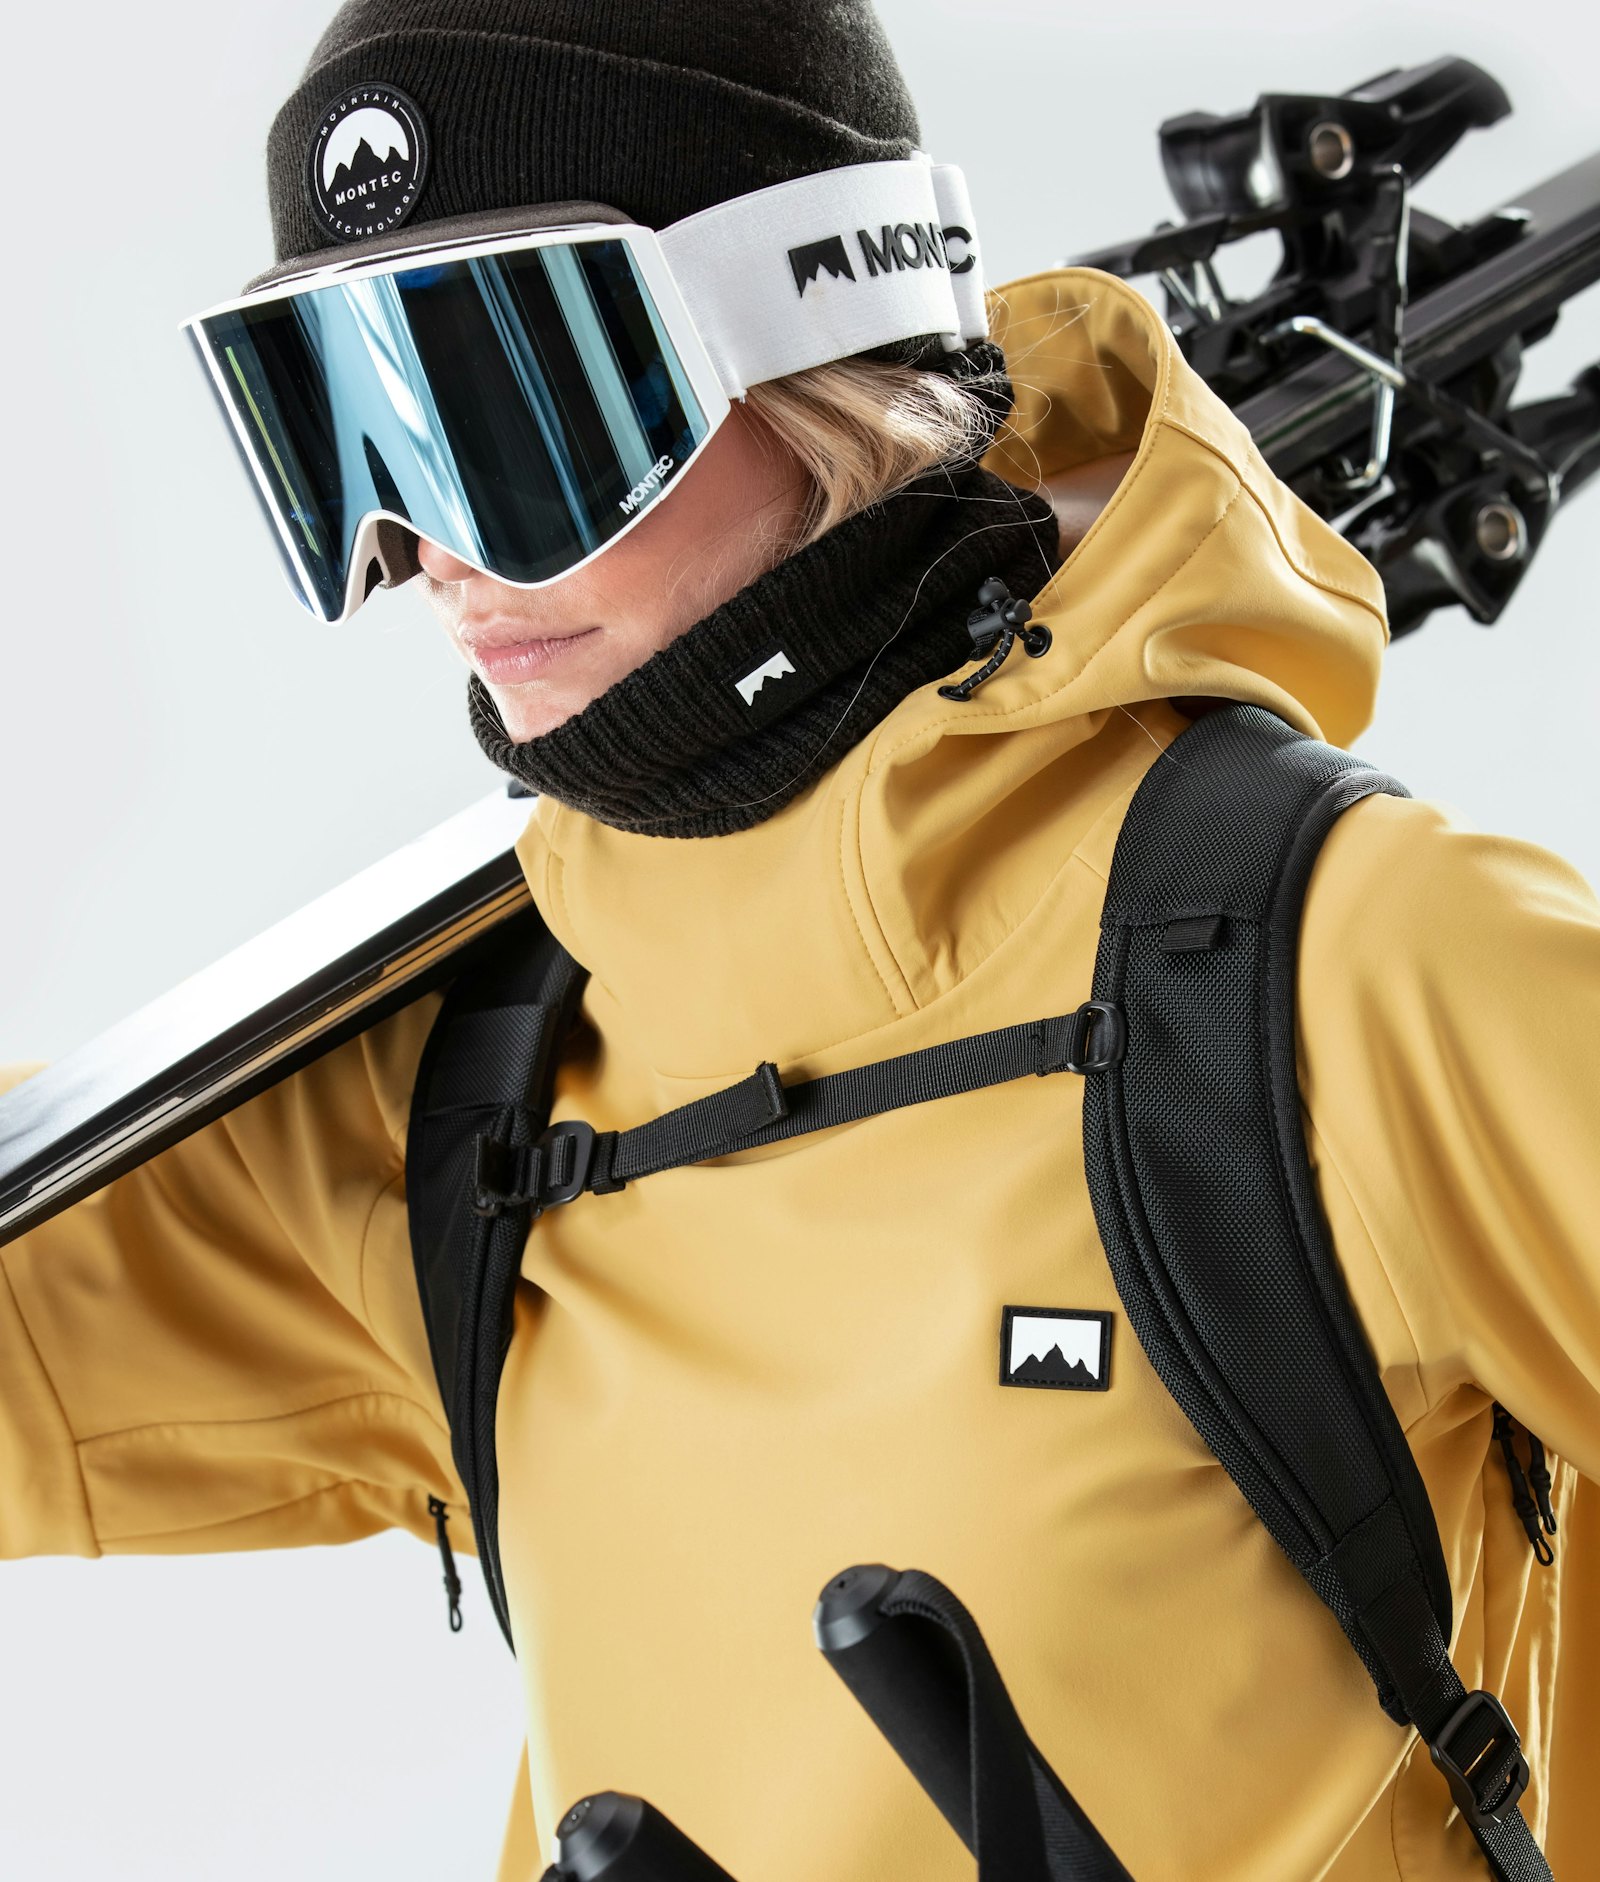 Tempest W 2020 Ski Jacket Women Yellow